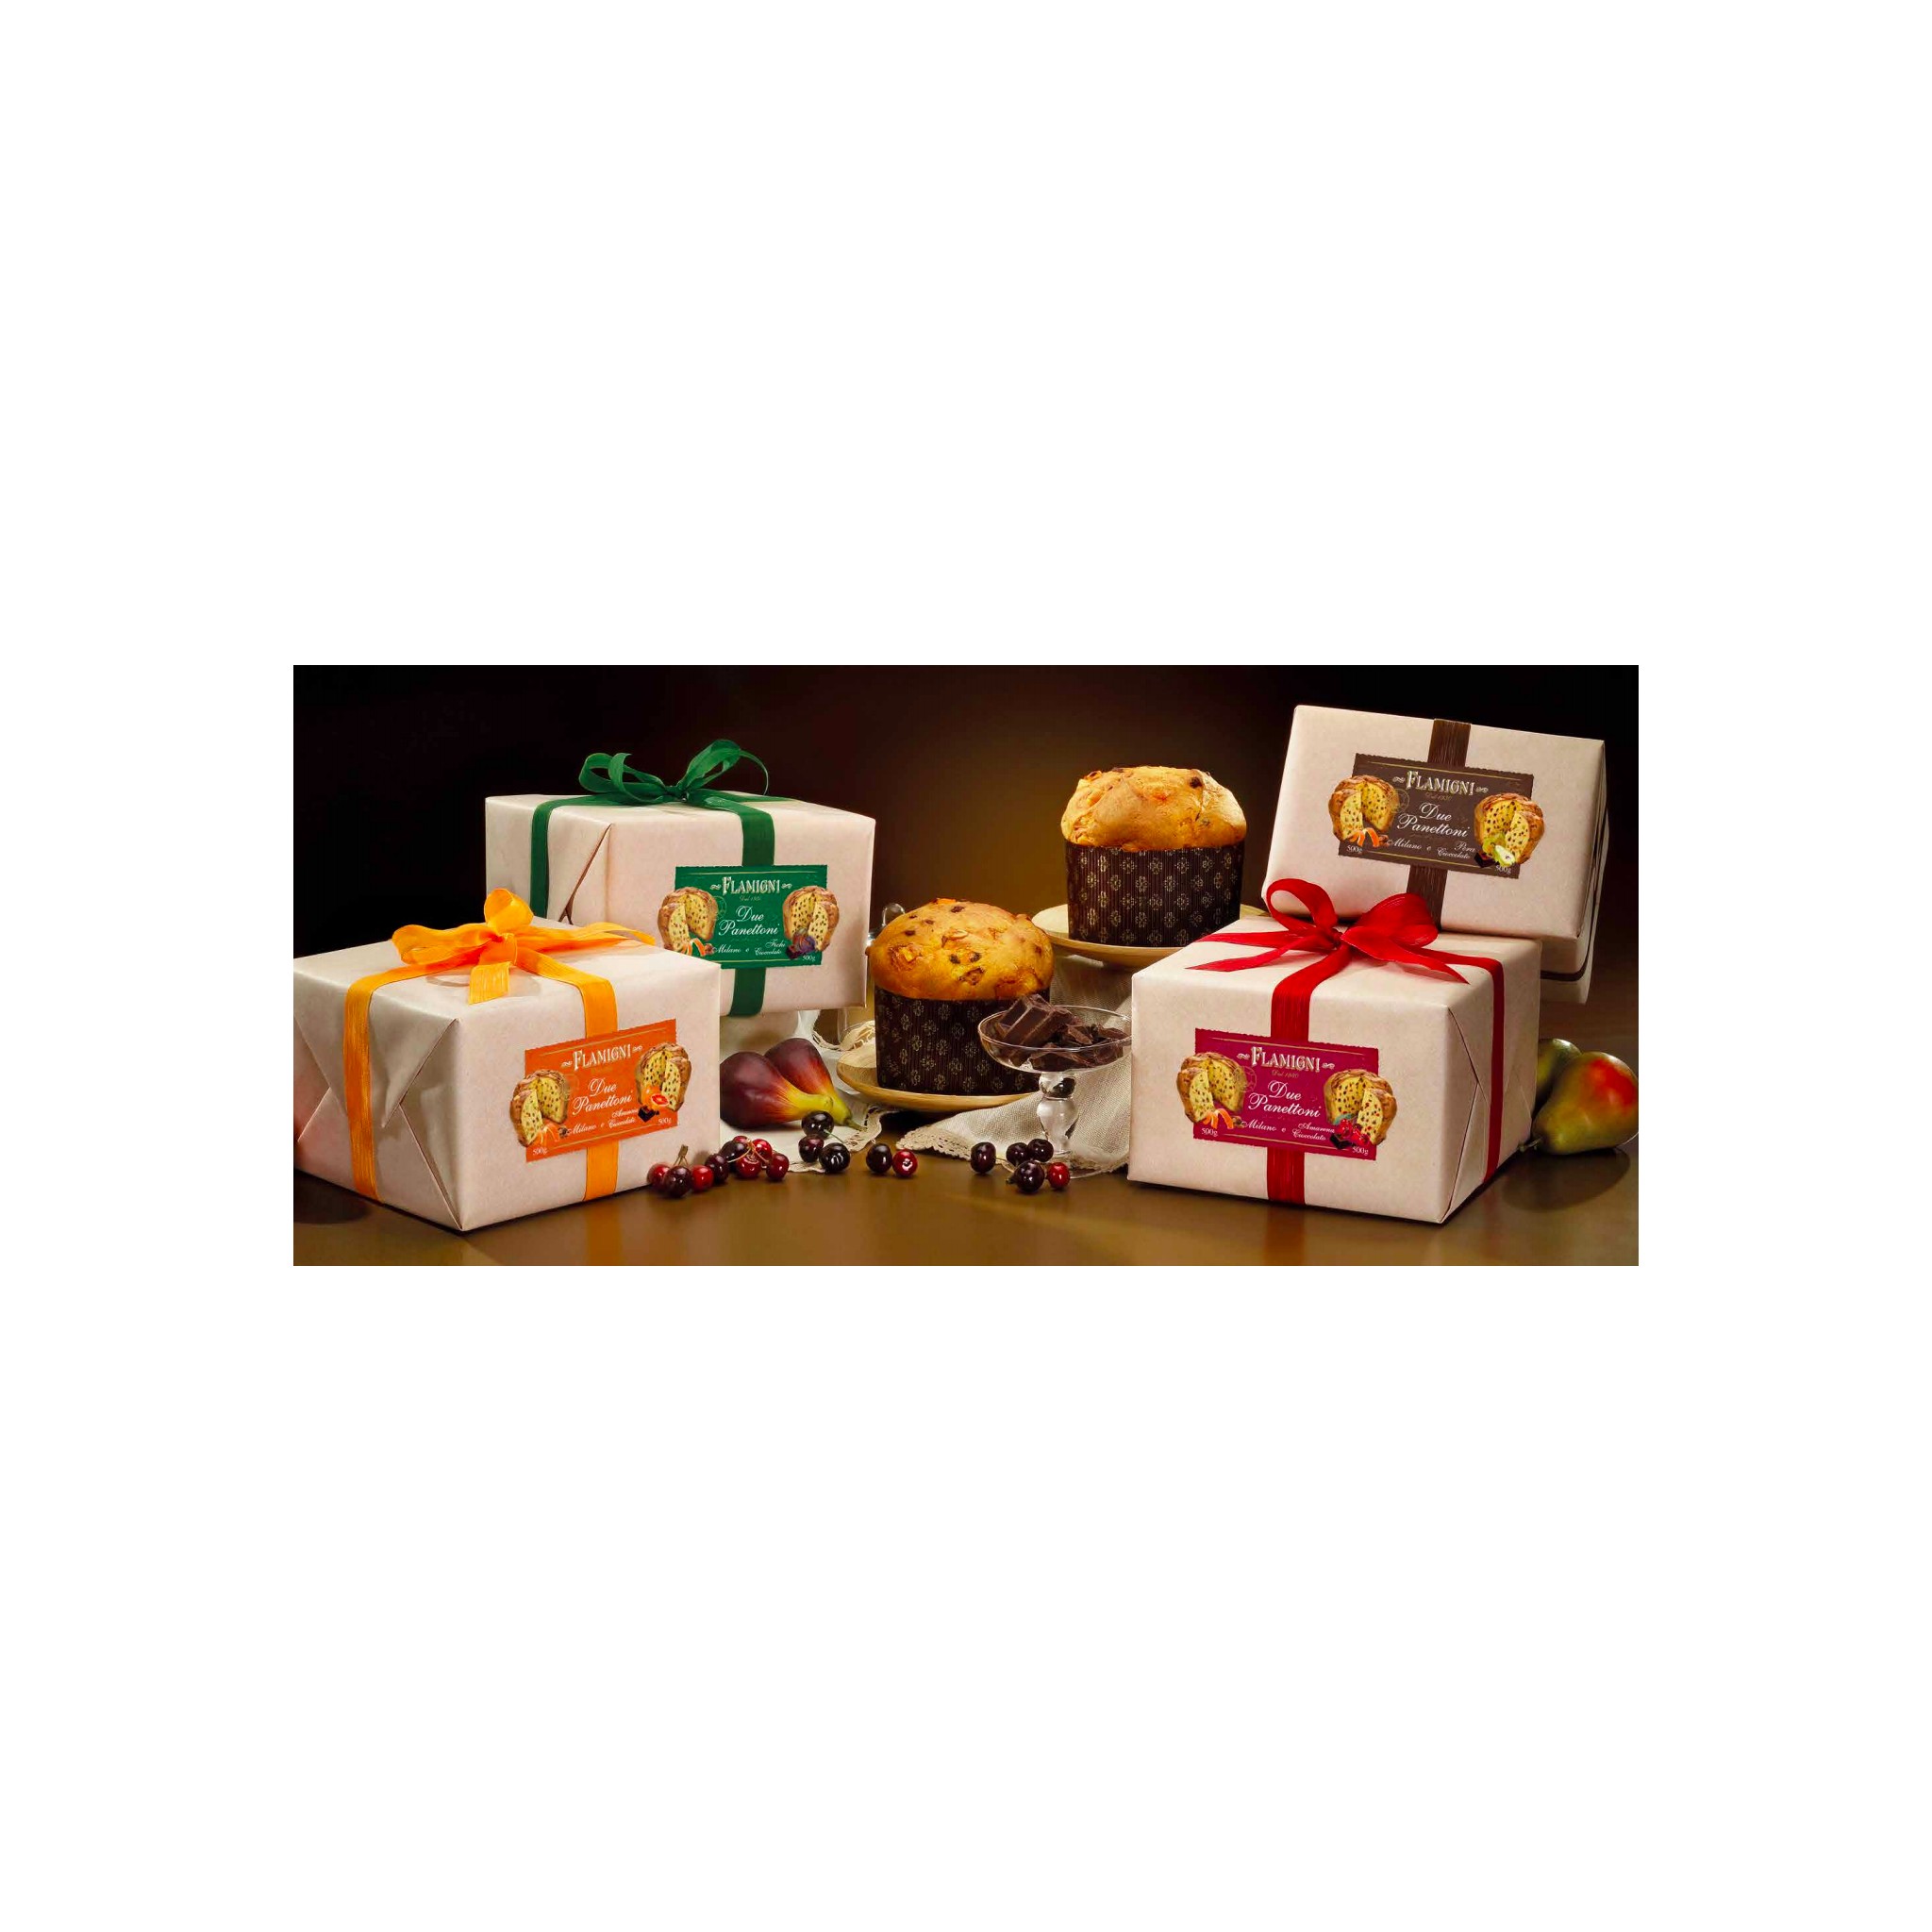 Assortment of 2 Mini Panettone Cakes + Pandoro in Gift Box